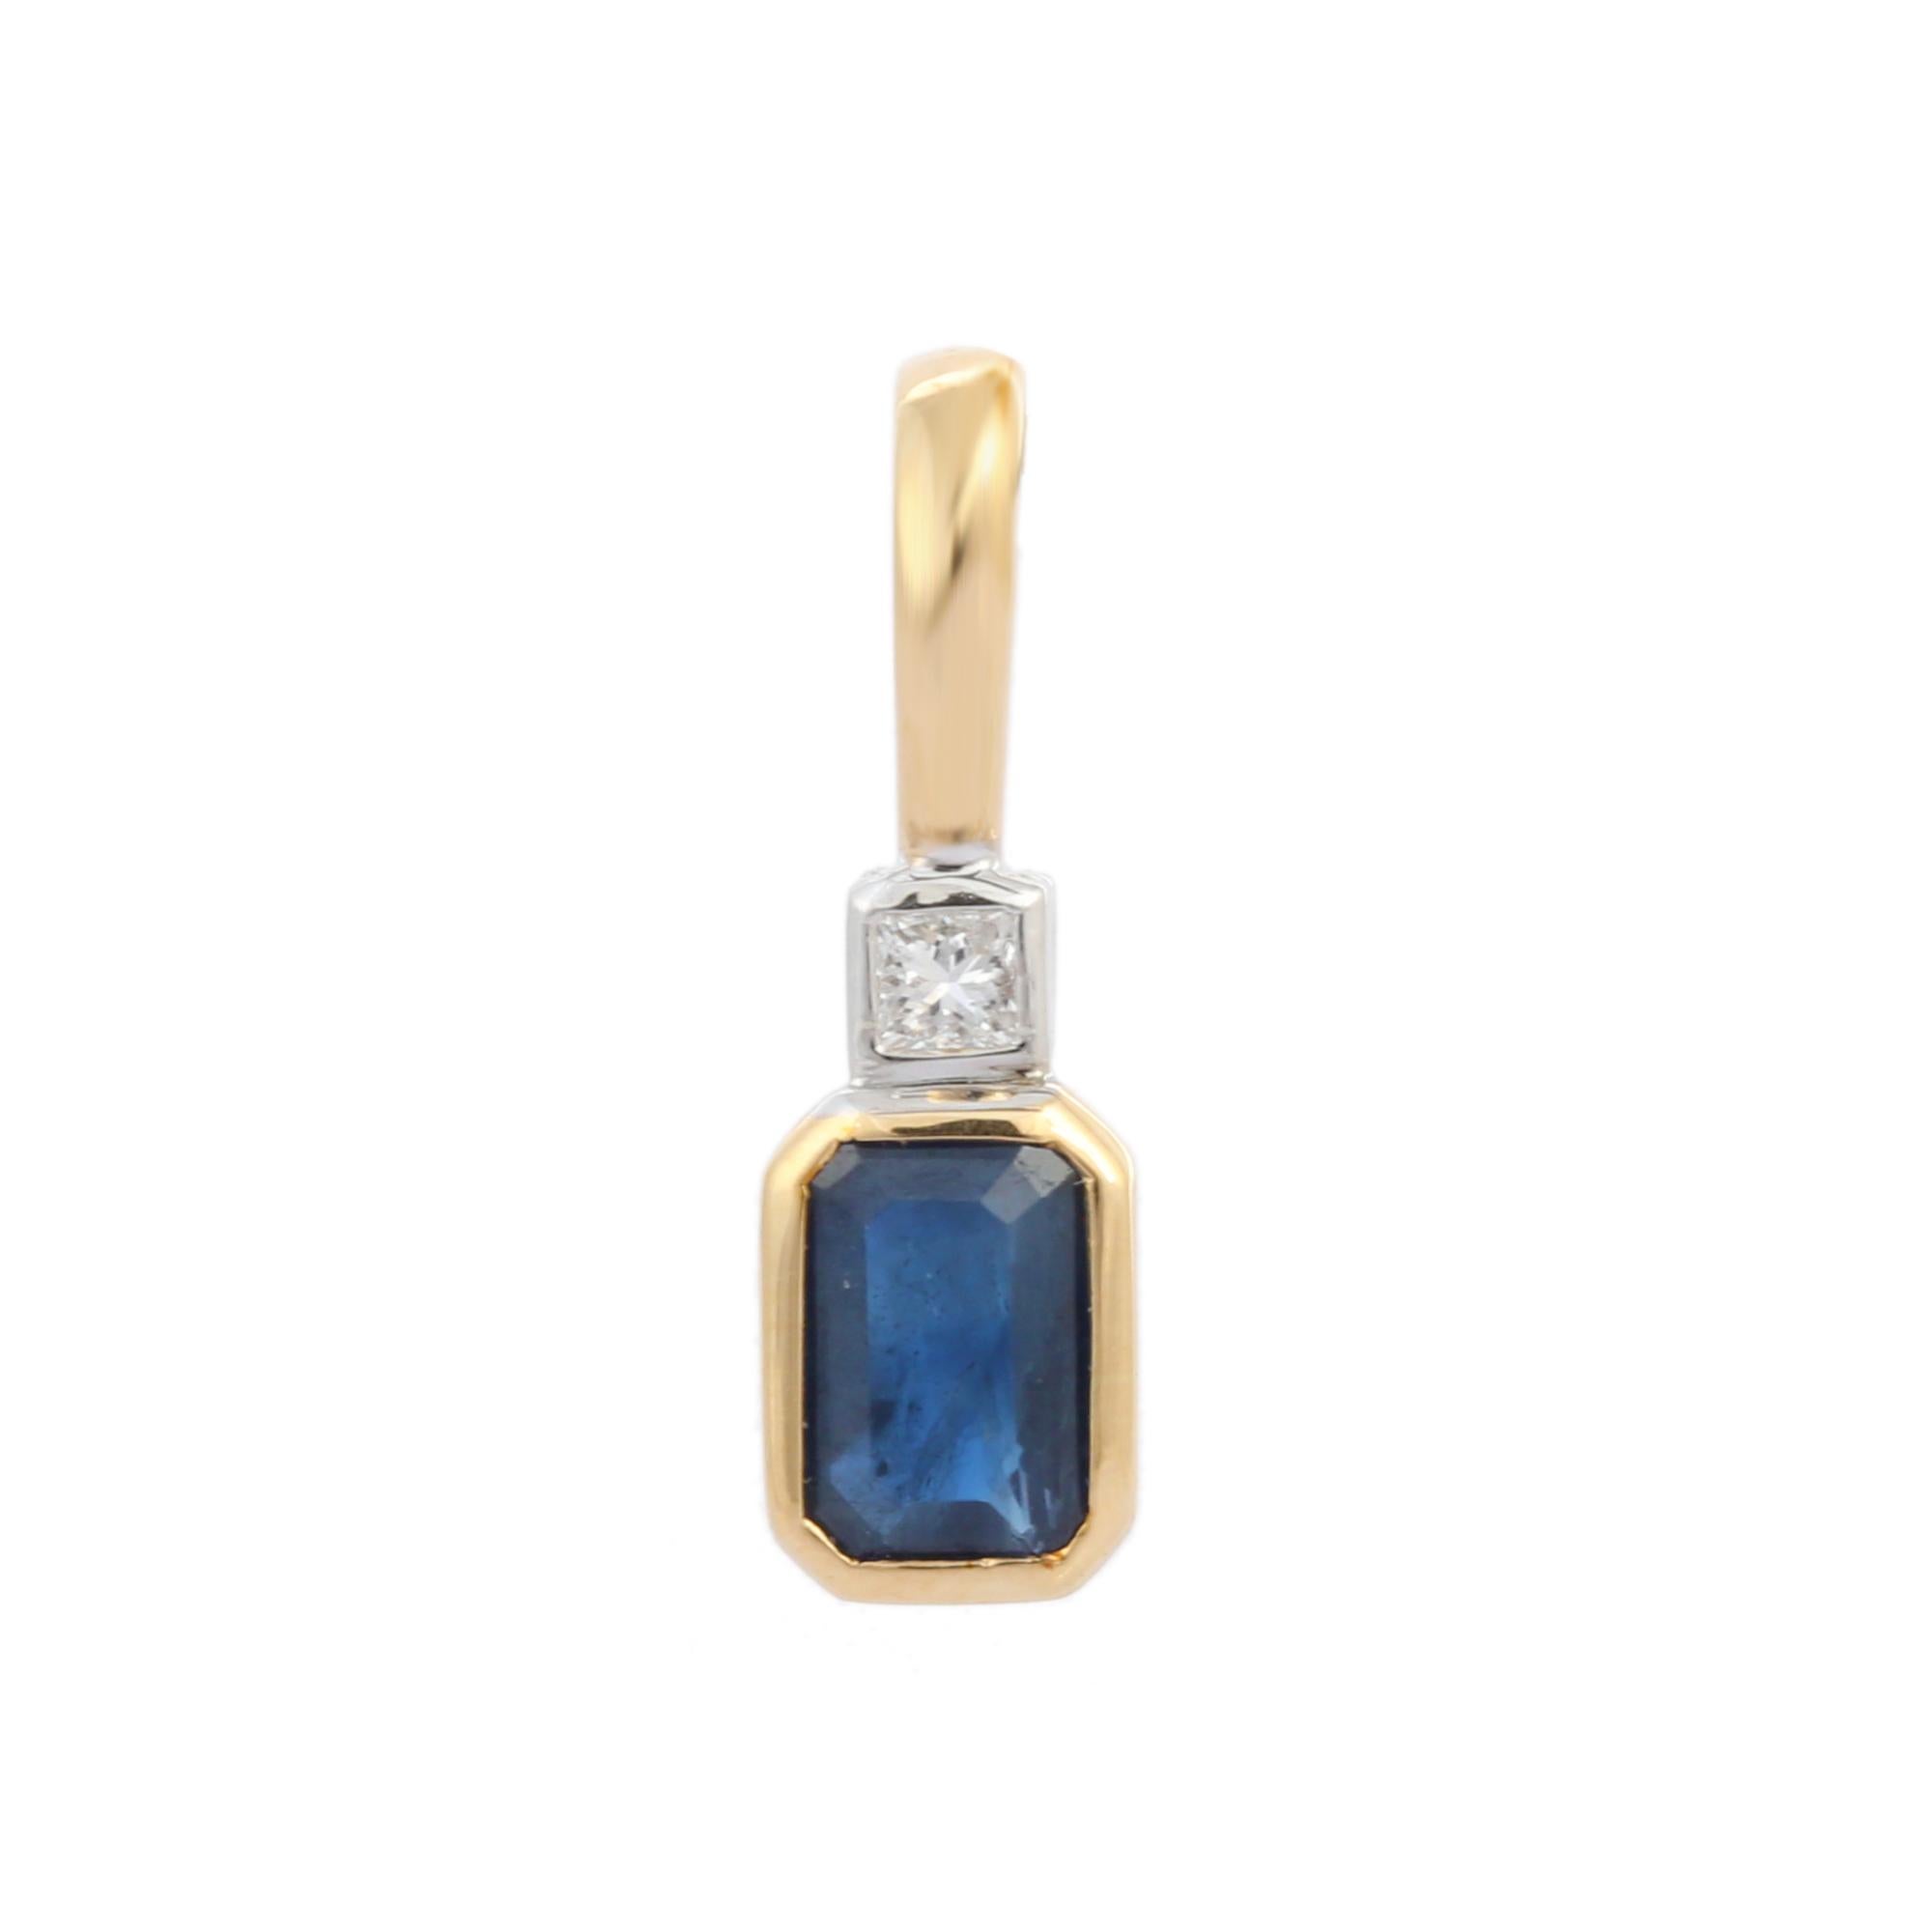 Pendentif en saphir bleu naturel et diamant en or 18K. Il est doté d'un saphir octogonal et d'un diamant qui complètent votre look avec une touche décente. Les pendentifs sont utilisés pour être portés ou offerts pour représenter l'amour et les